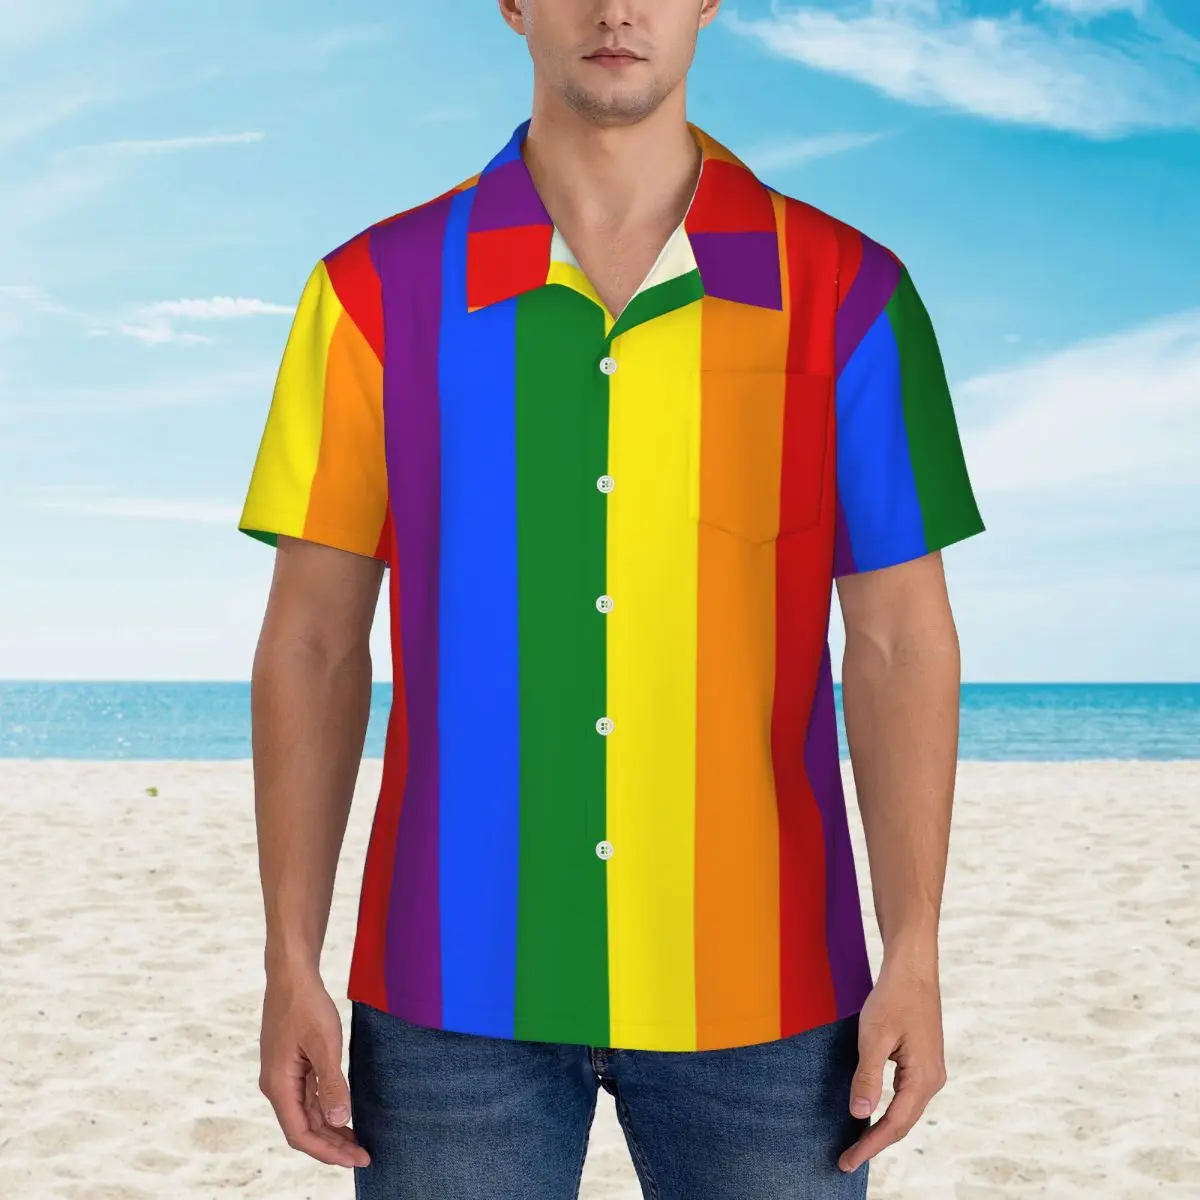 

Пляжная рубашка ЛГБТ Радуга, Гавайские повседневные рубашки с принтом гордости и флага, мужские модные блузки с коротким рукавом, корейские модные топы с графическим рисунком